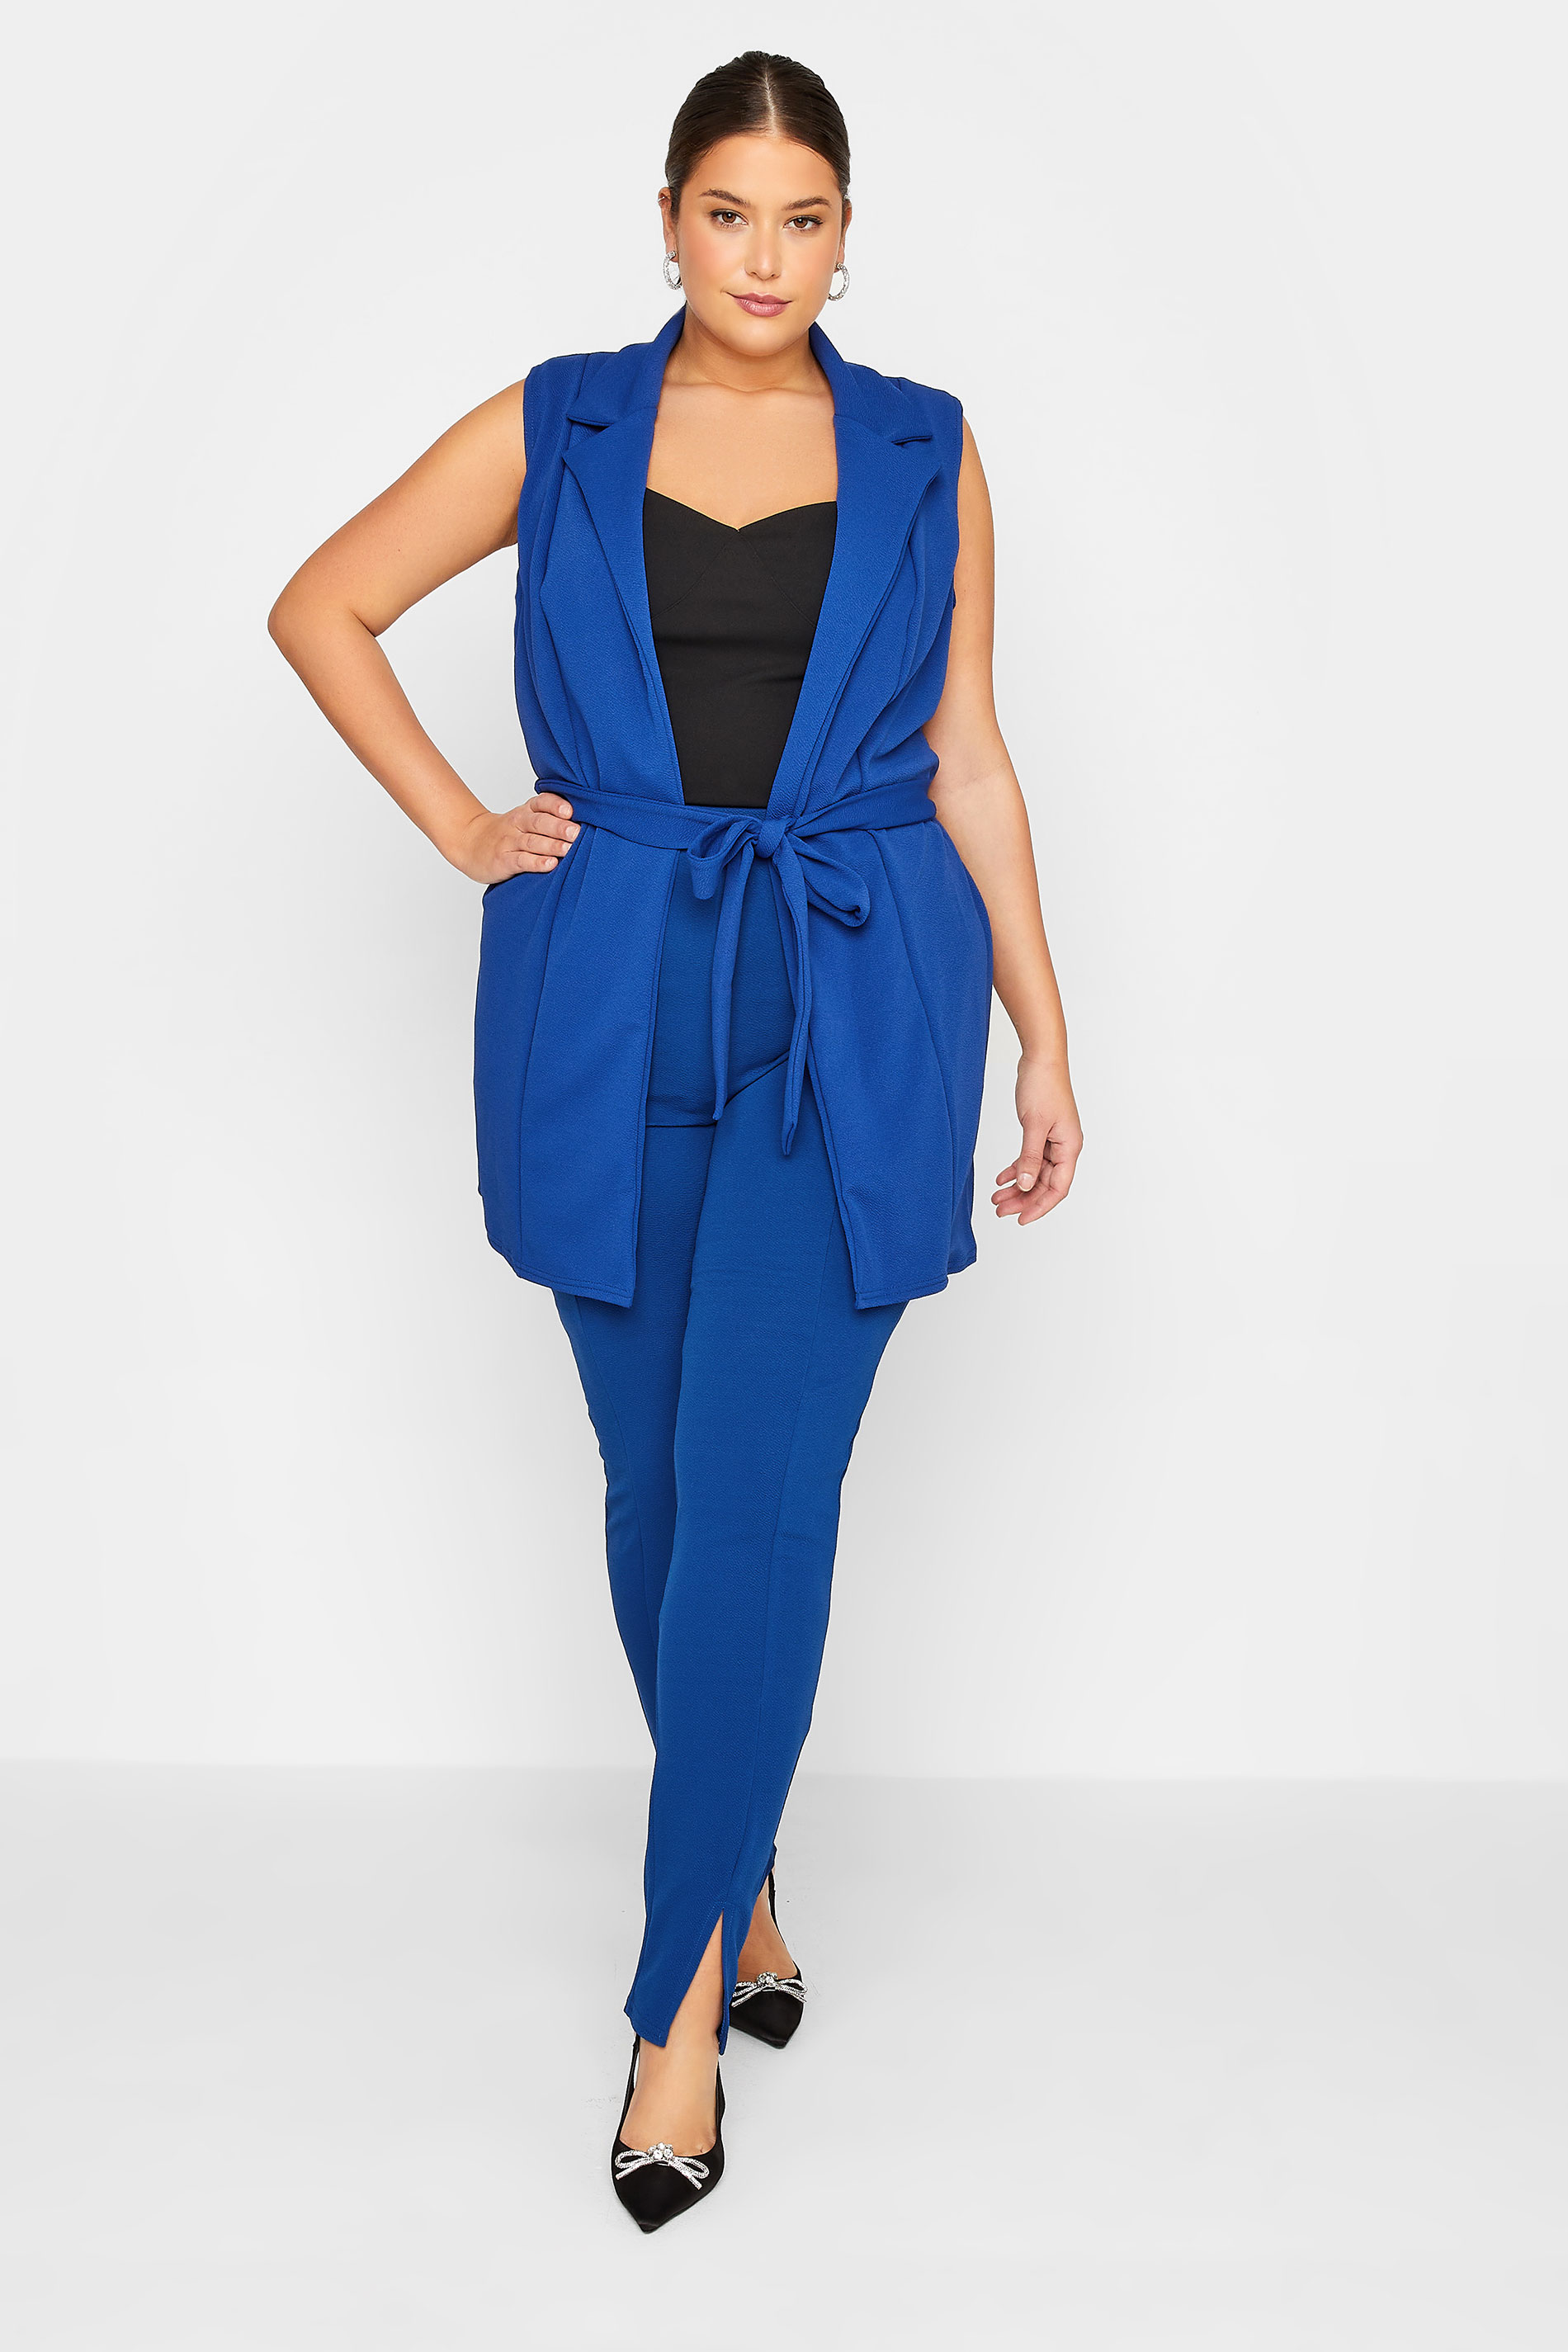 LTS Tall Women's Cobalt Blue Sleeveless Scuba Blazer | Long Tall Sally 2